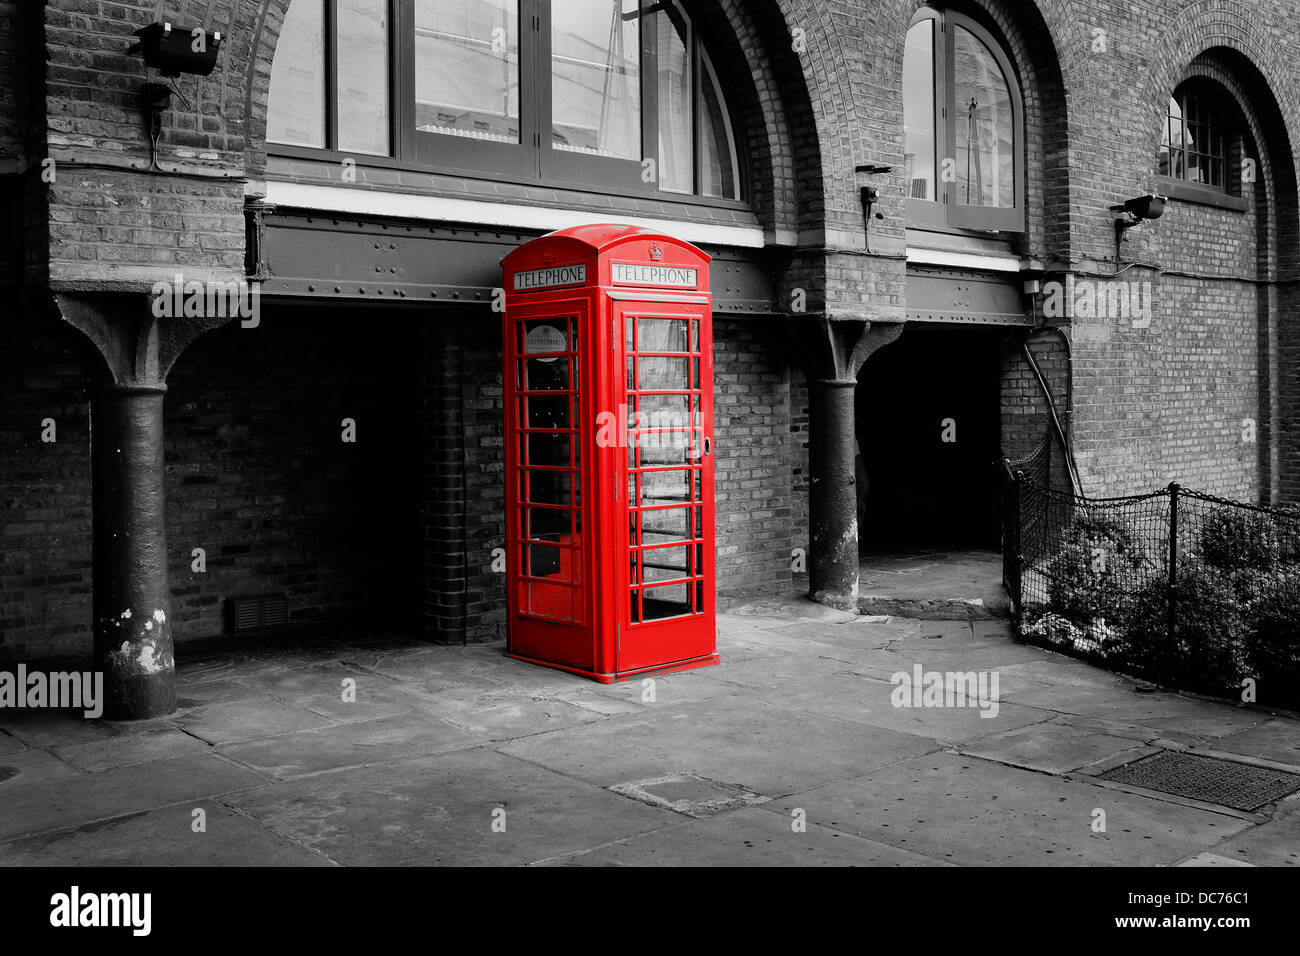 Boîte de téléphone rouge en image monochrome. London UK Exemple d'utilisation de filtre couleur partielle (rouge) de l'appareil photo Fujifilm X100s Banque D'Images